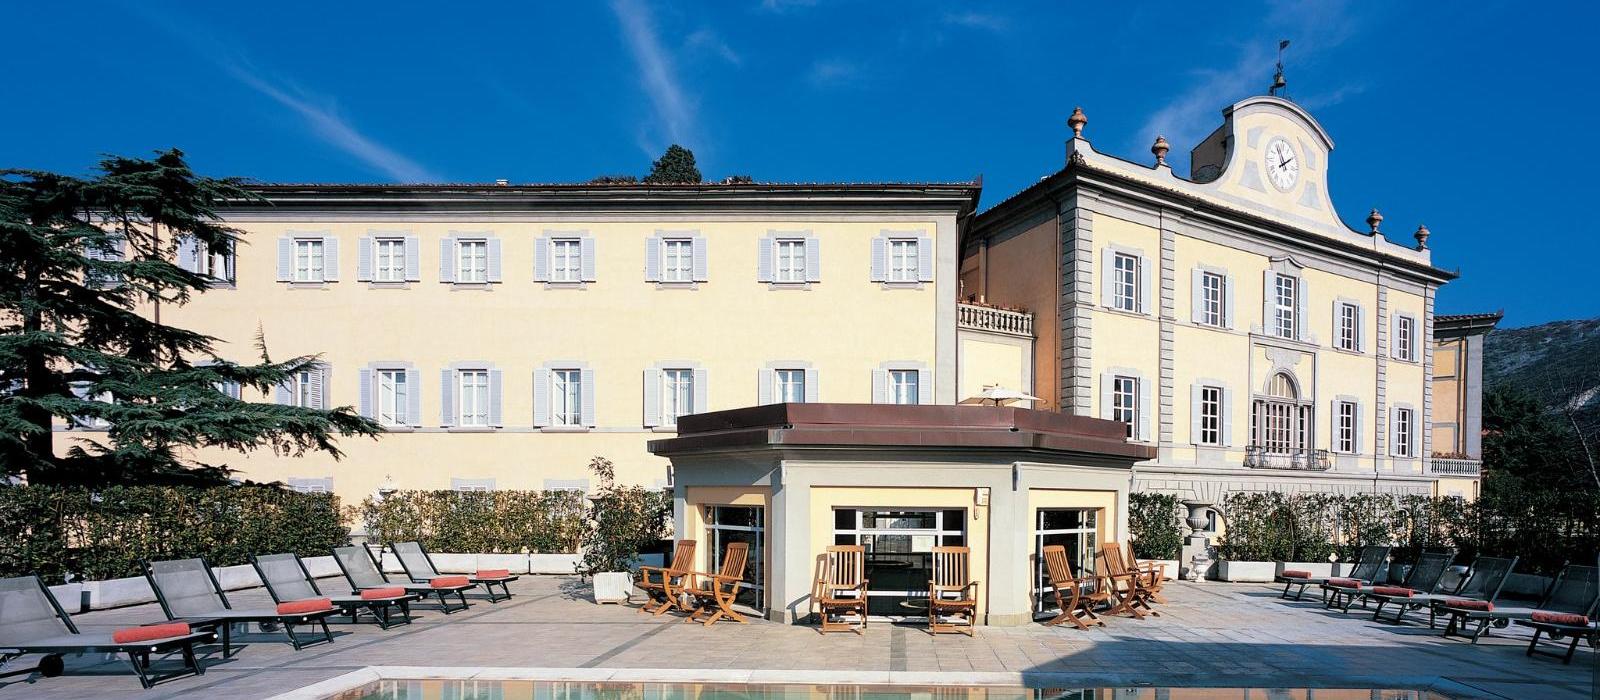 巴尼迪比萨皇宫水疗酒店(Bagni di Pisa Palace and Thermal Spa) 图片  www.lhw.cn